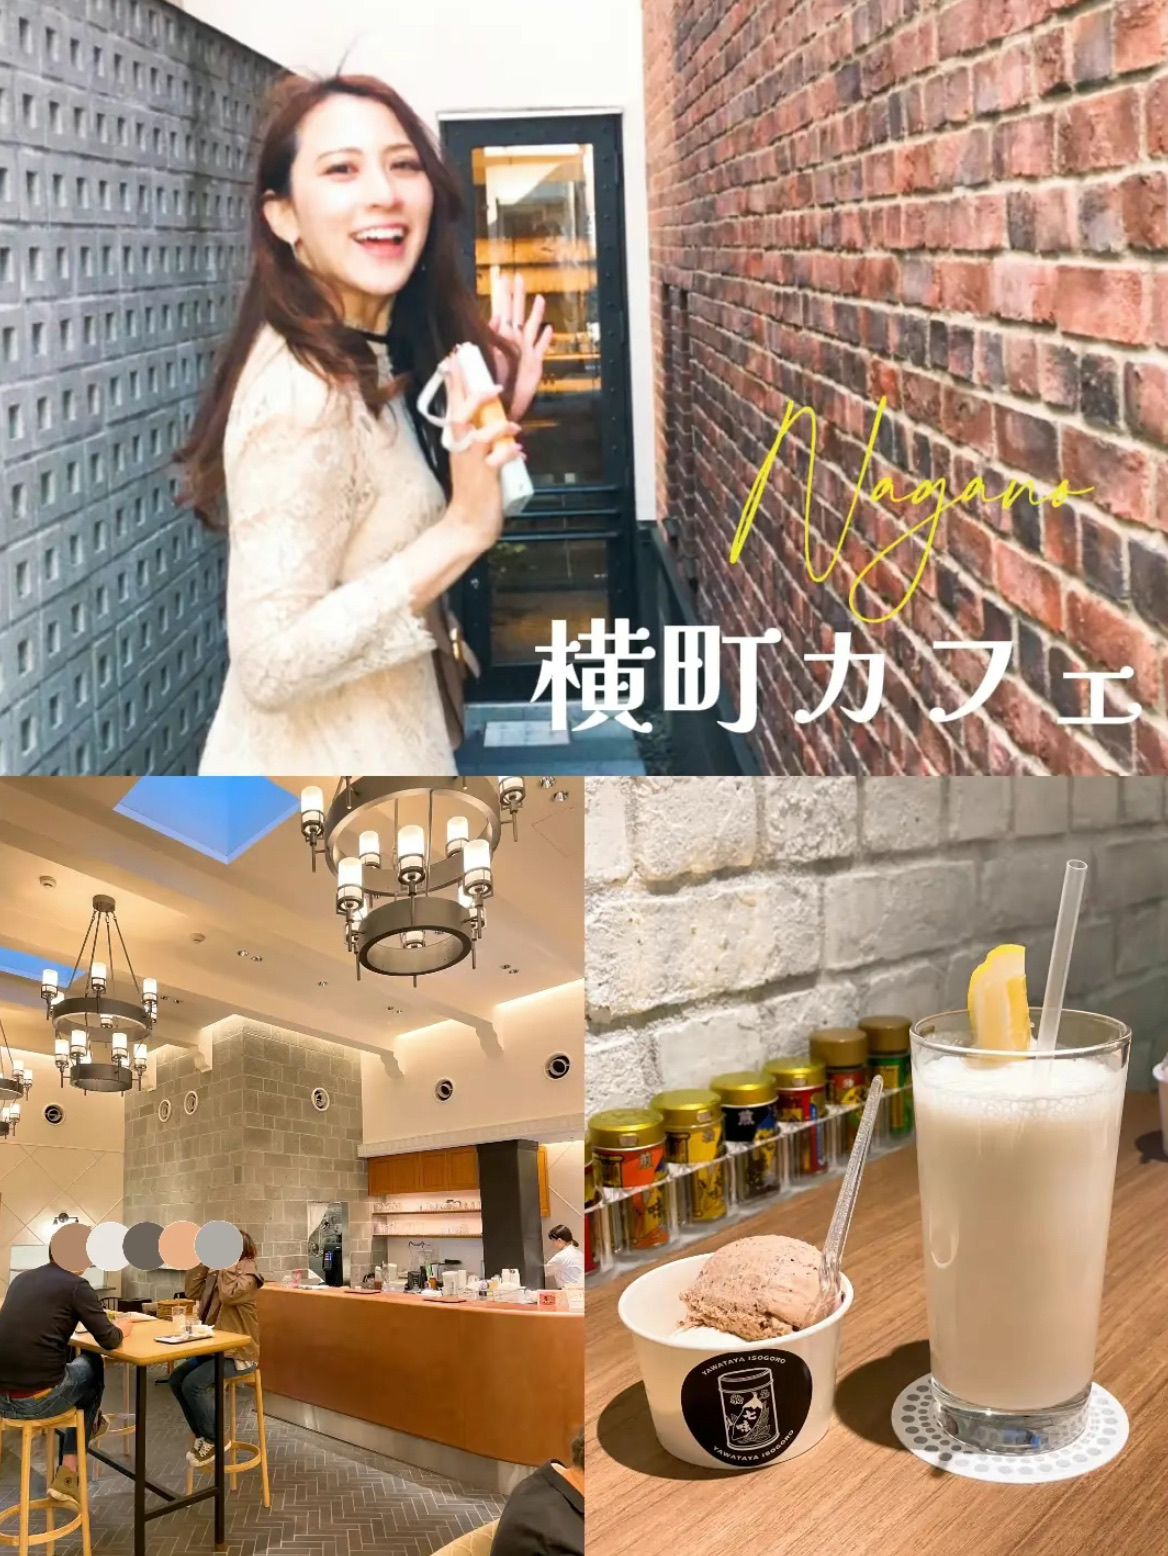 [长野]八幡屋矶五郎的鲜为人知的咖啡馆!吃七味的香料冰淇淋很有趣🍨横町咖啡厅